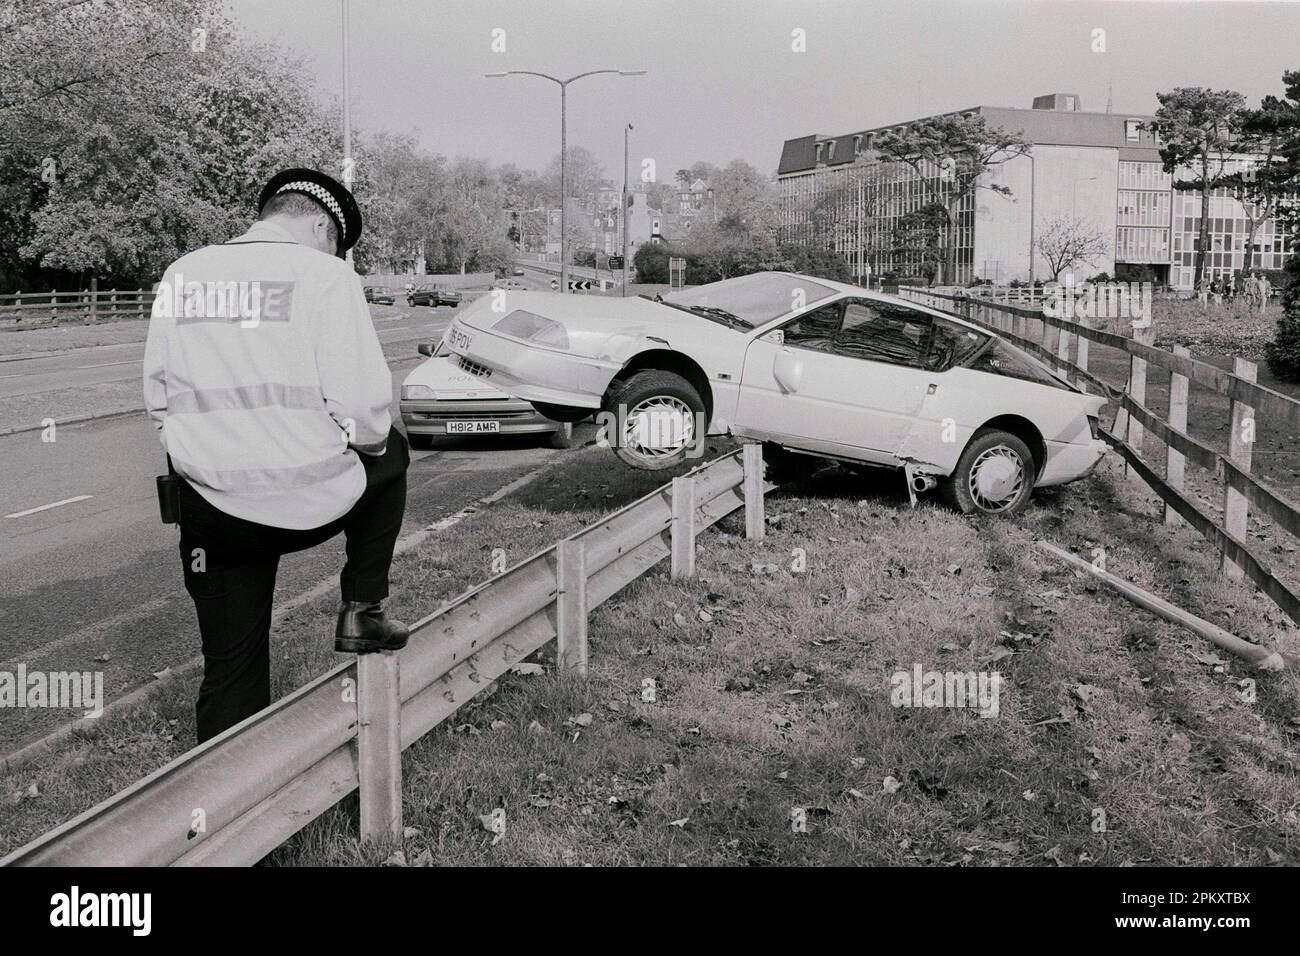 Une Renault Alpine s'est écrasée au milieu de 90s sur la barrière de collision à côté du périphérique de Salisbury, Wiltshire au Royaume-Uni. Vers 1995. Aucune blessure n'a été subie. Banque D'Images